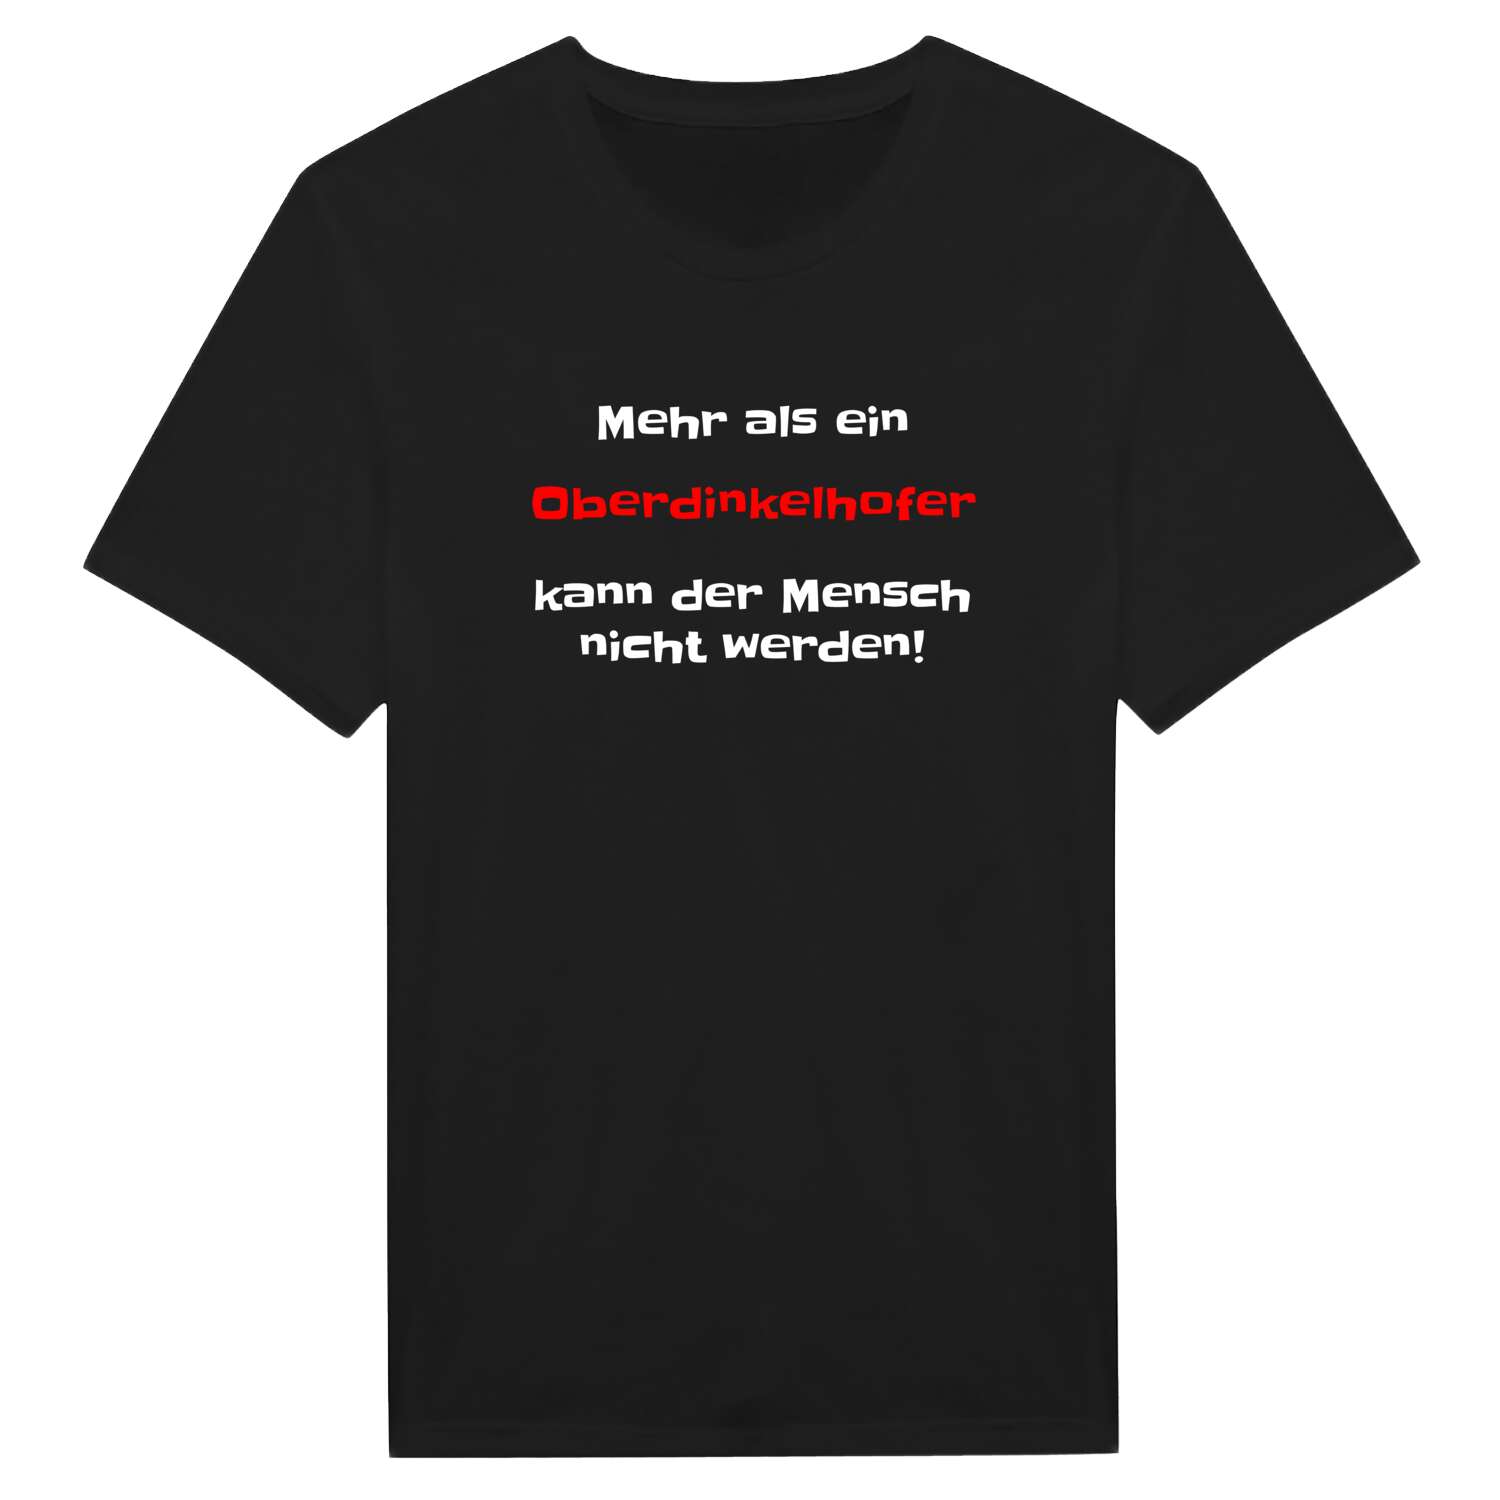 Oberdinkelhof T-Shirt »Mehr als ein«